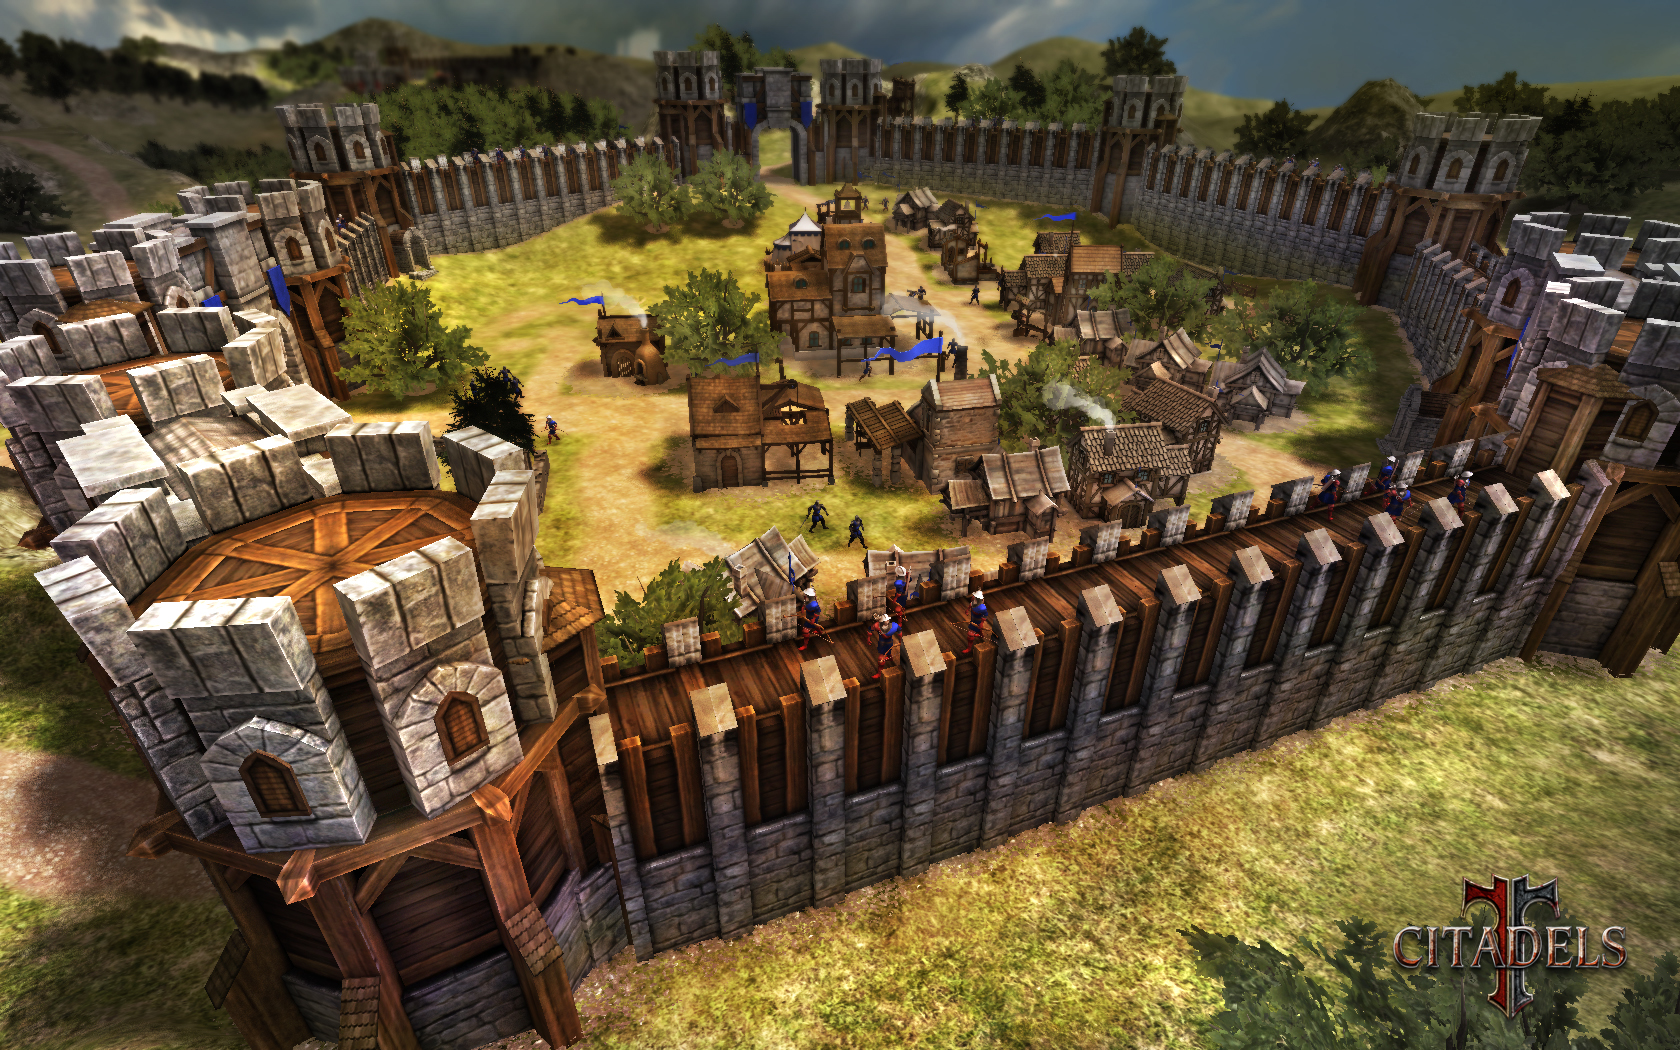 Średniowieczny RTS Citadels doczekał się fanowskiego spolszczenia